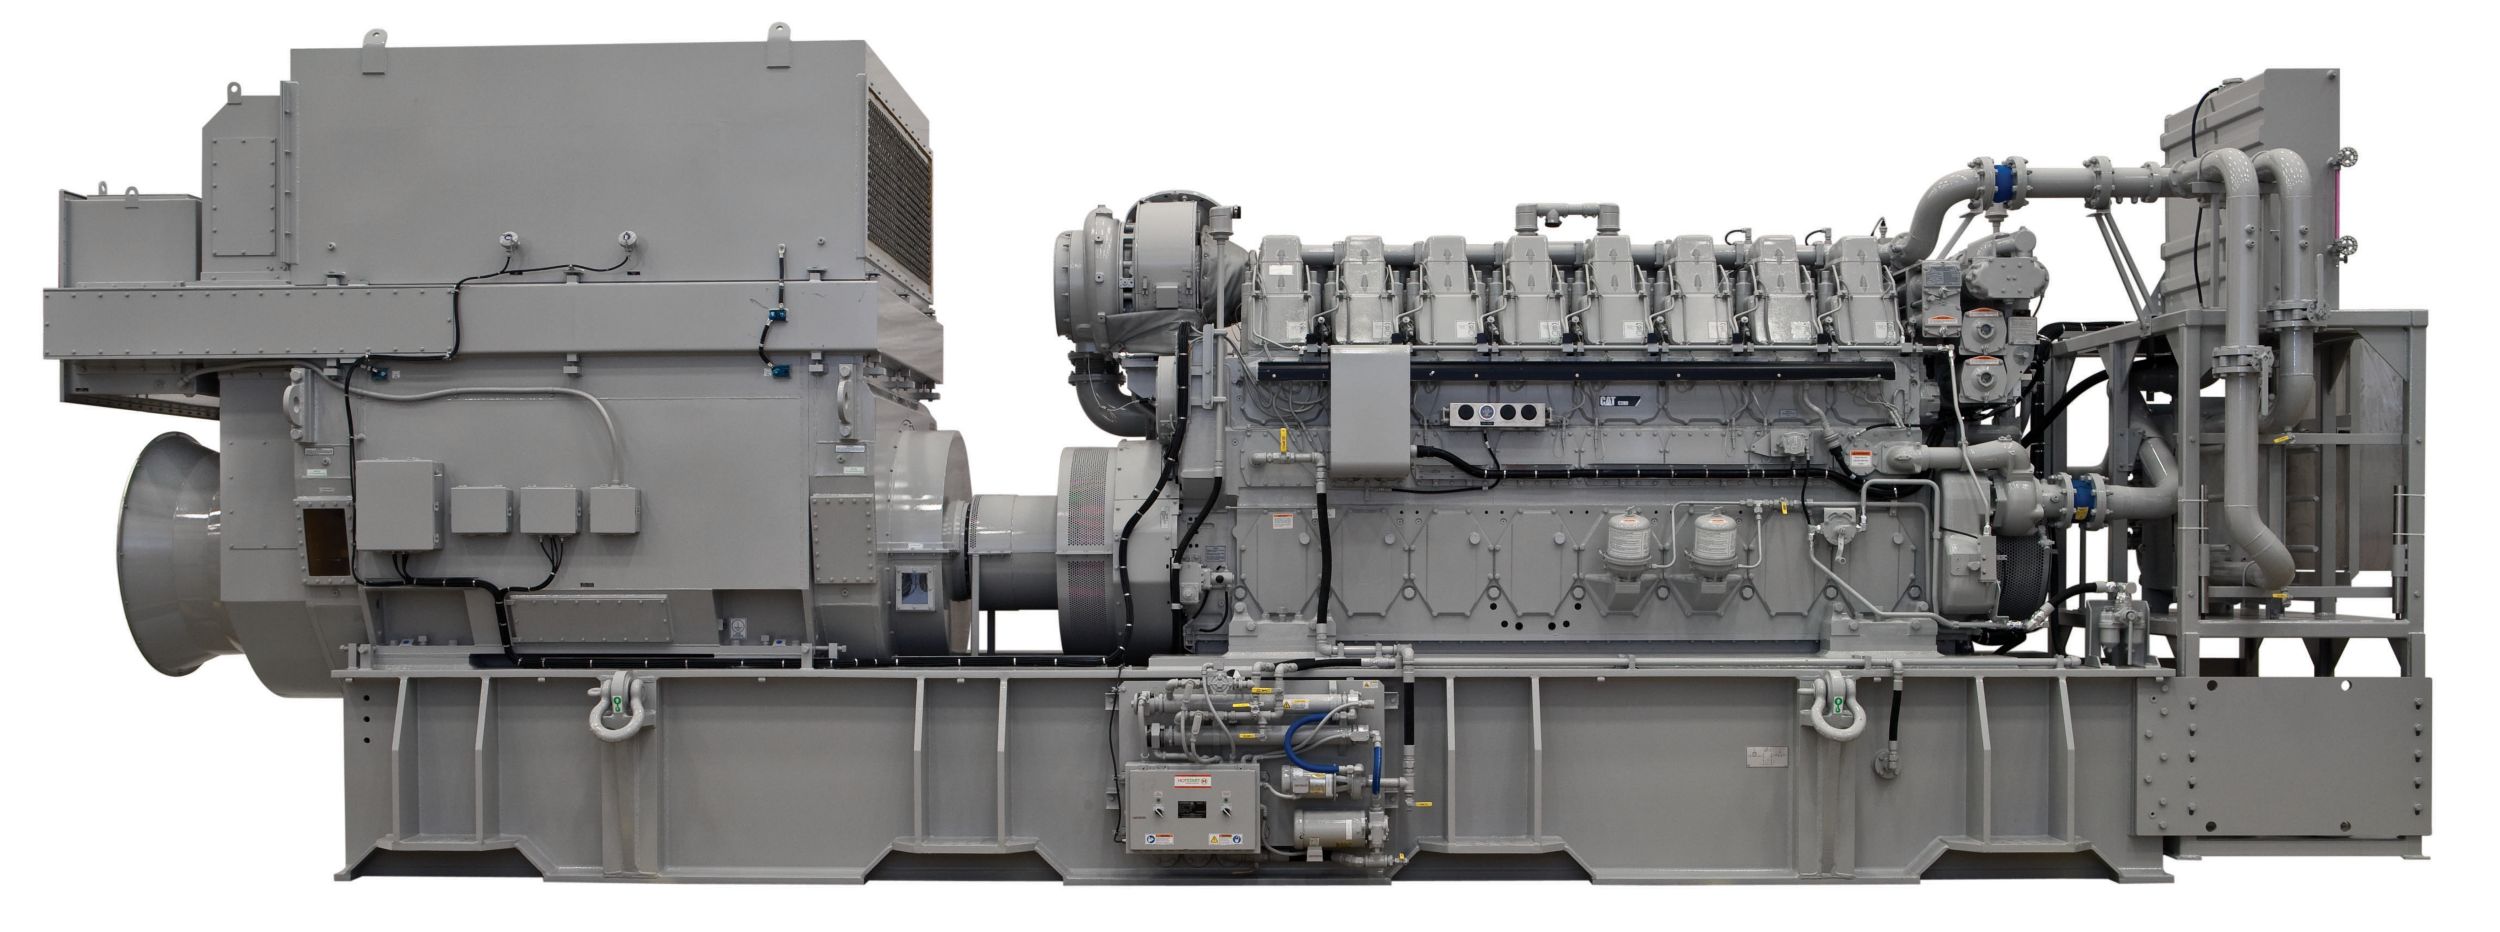 c280-8-offshore-generator-set